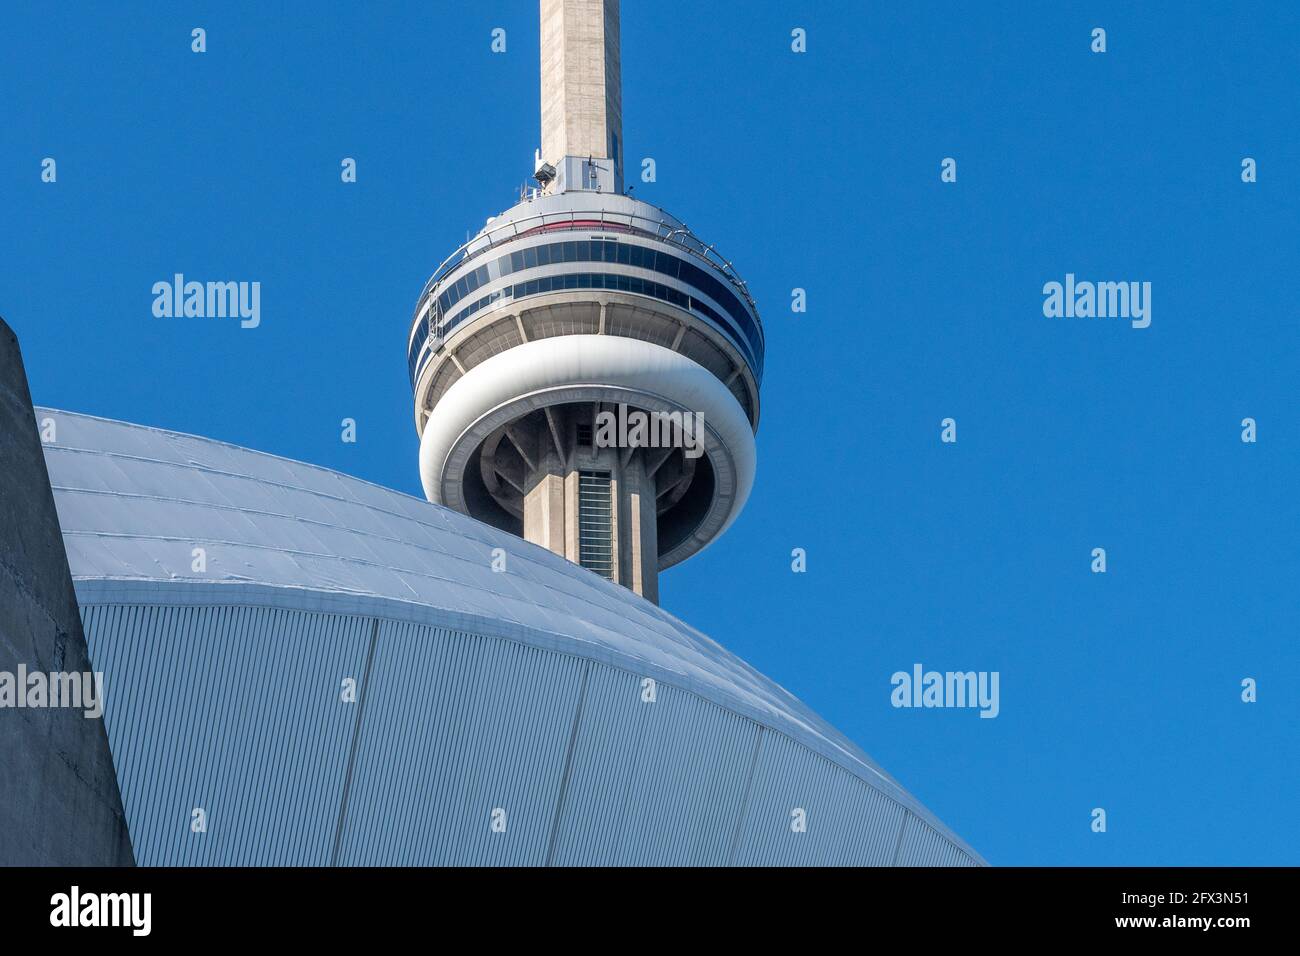 La CN Tower in una bella giornata cielo blu a Toronto, Canada. Il simbolo canadese è incorniciato nell'architettura del Rogers Centre Foto Stock